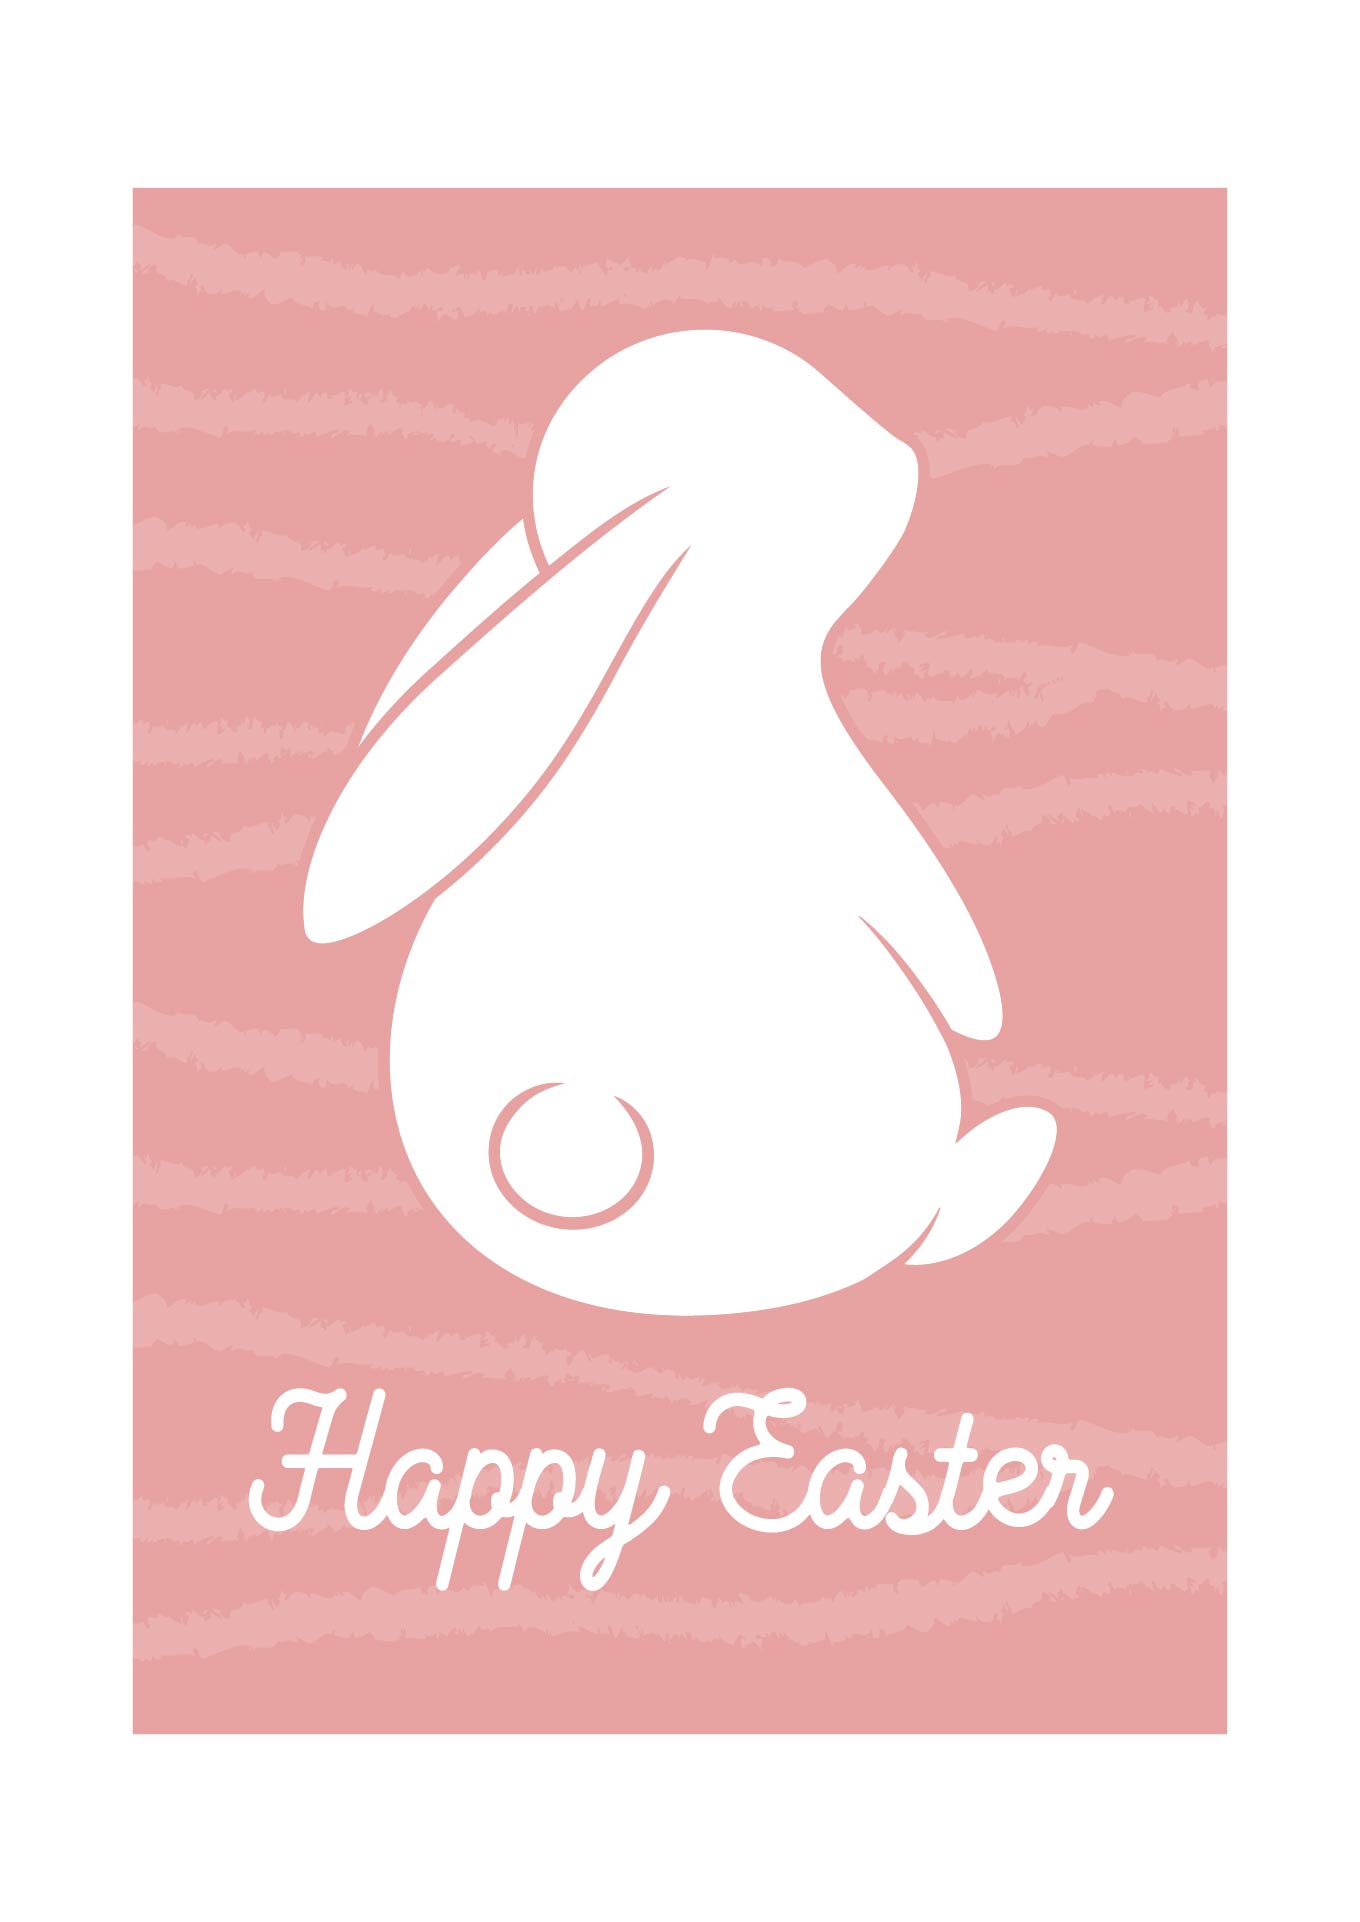 Printable Easter Bunny Tail Tags